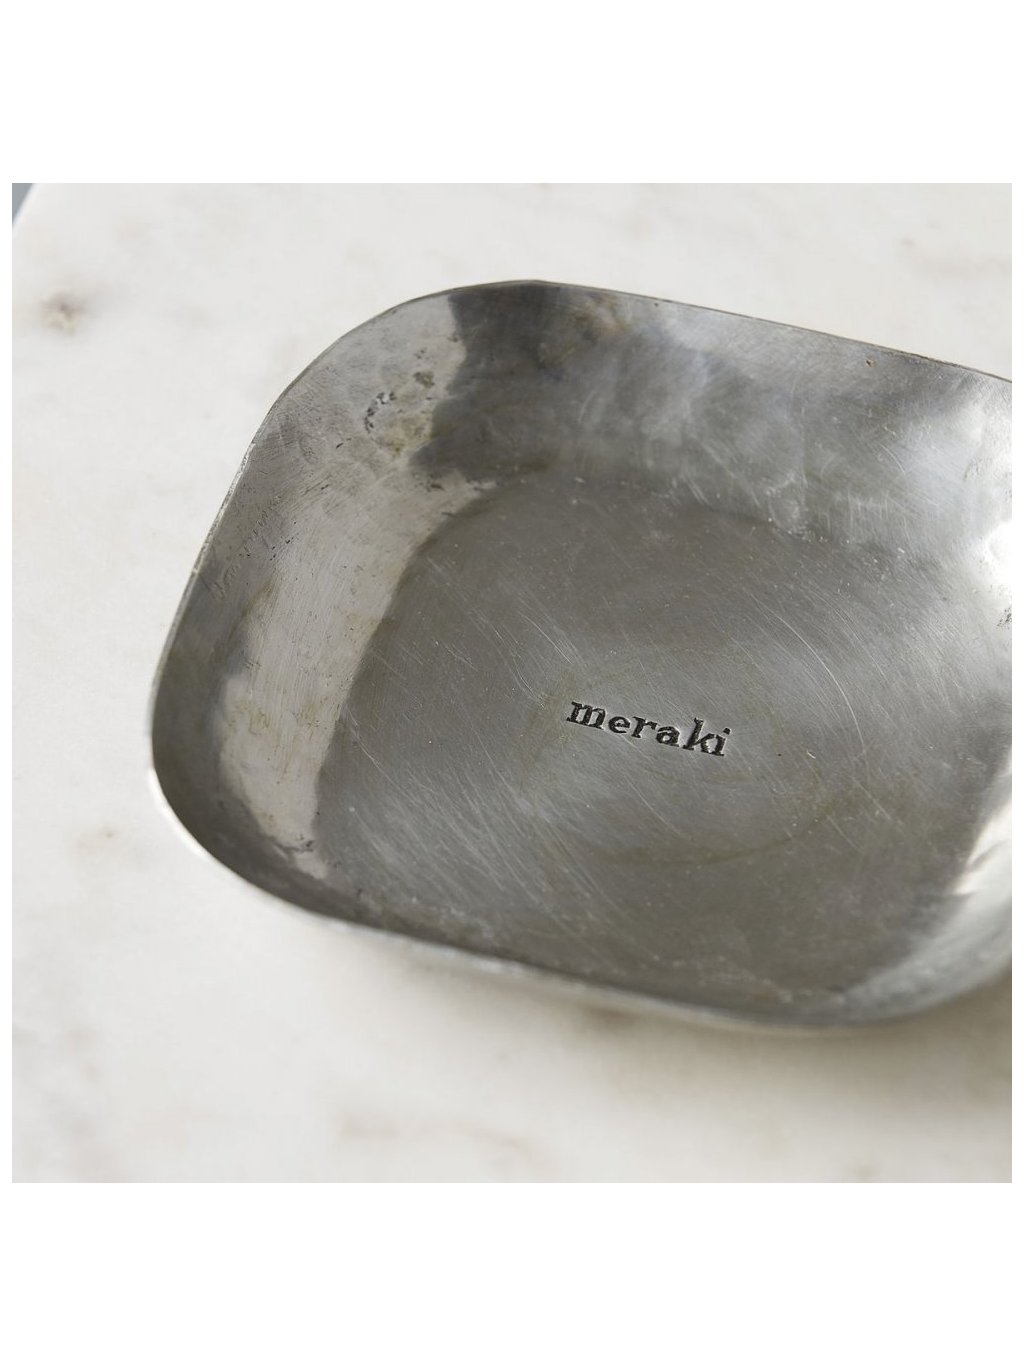 Hliníkový tácek se stříbrnou povrchovou úpravou od Meraki